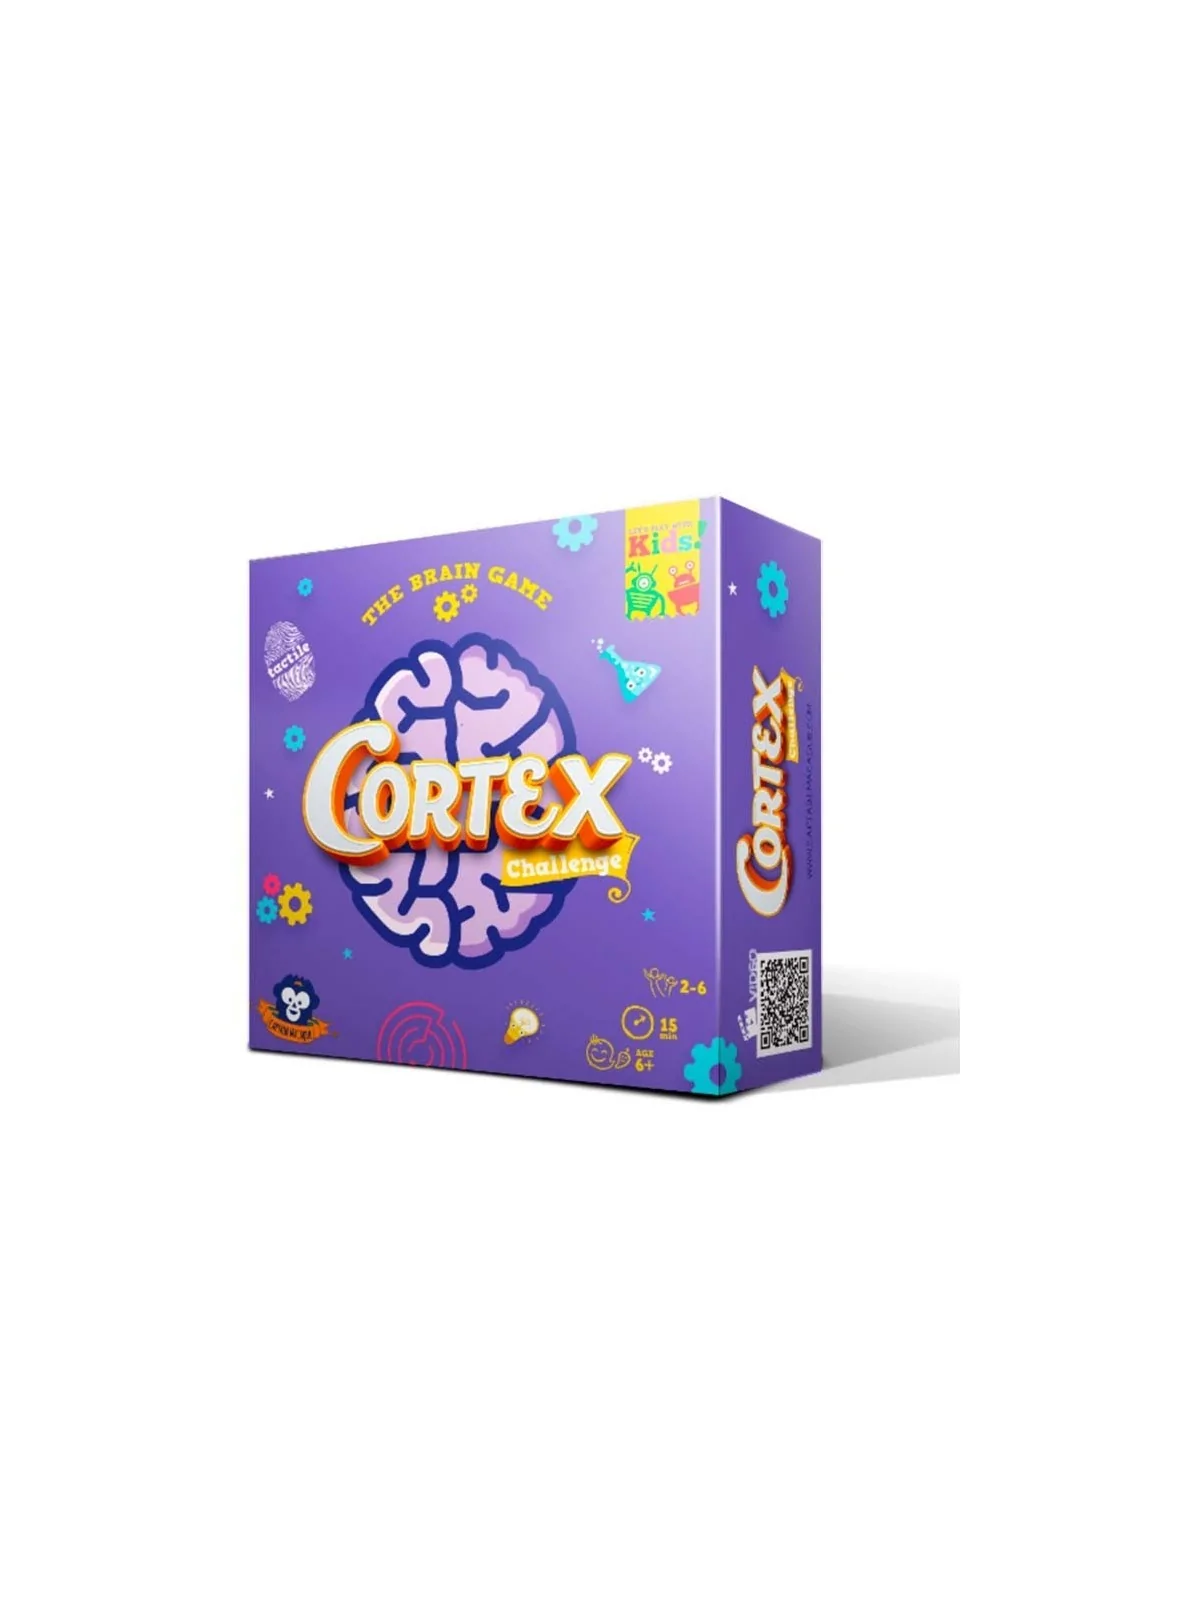 Comprar Cortex Kids barato al mejor precio 14,39 € de Zygomatic